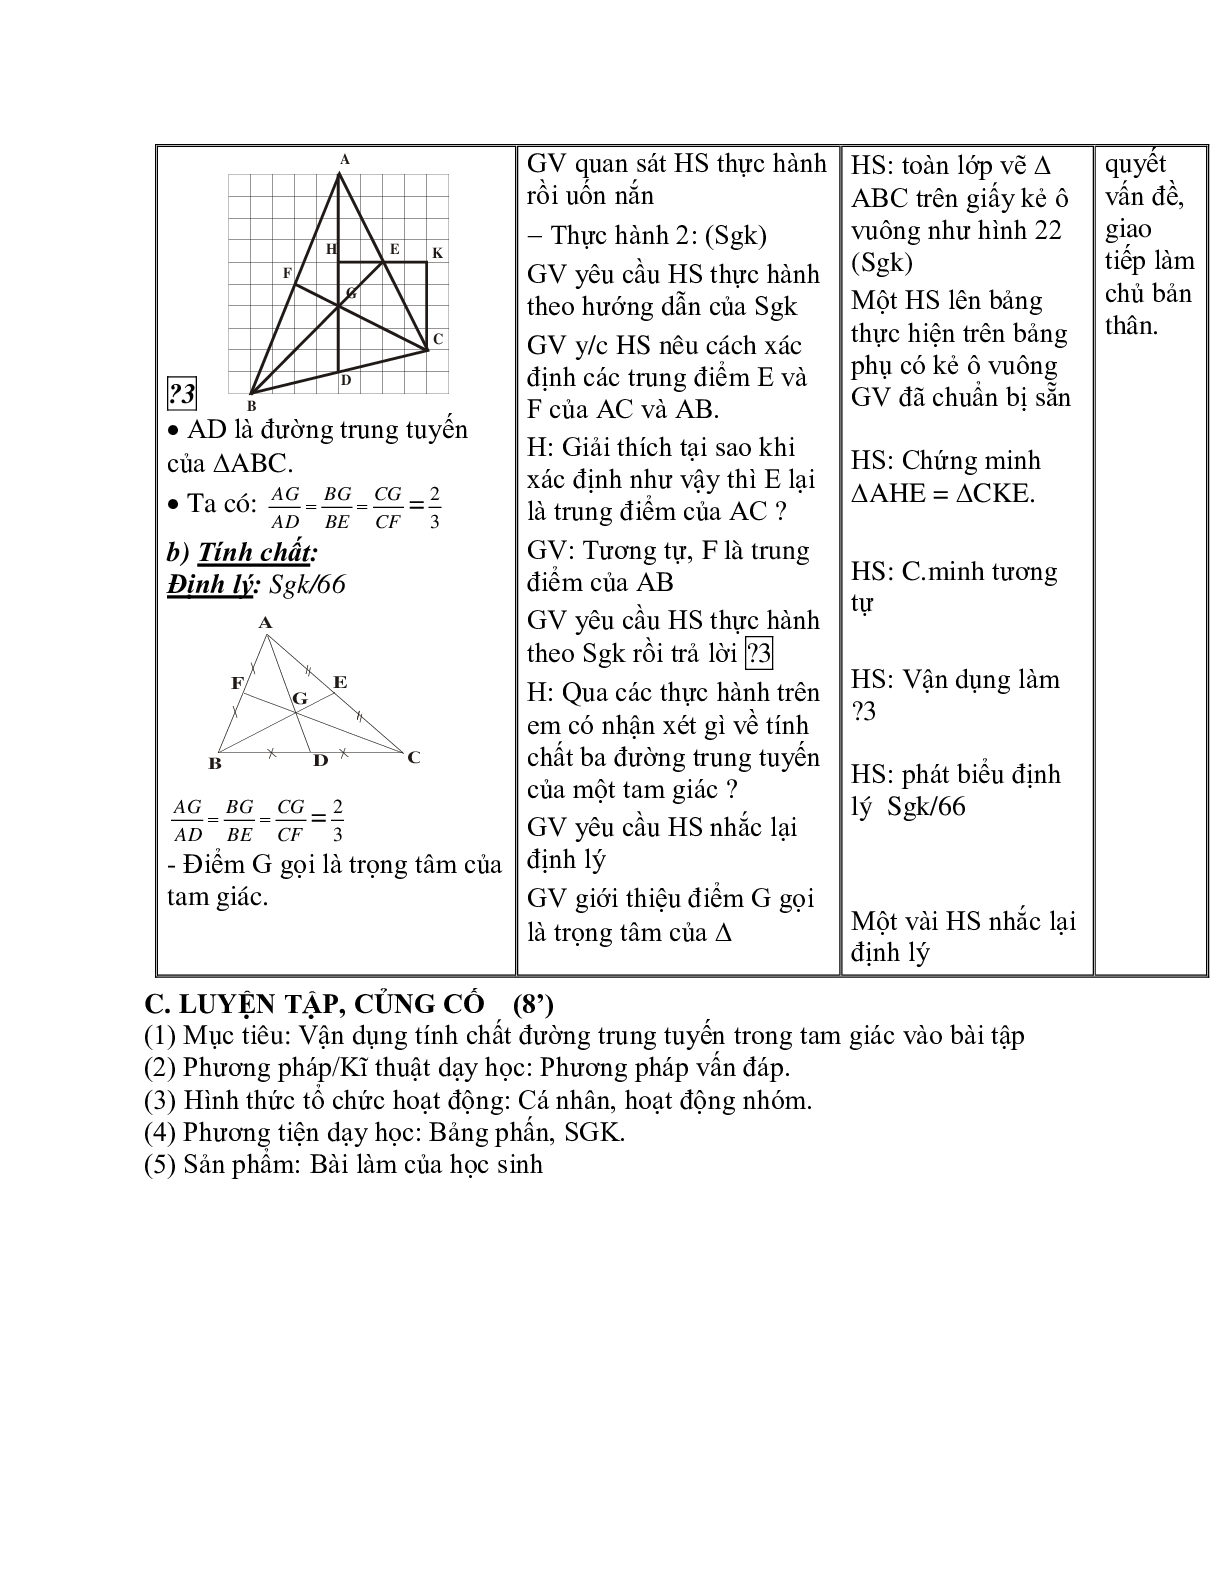 Giáo án Toán học 7 bài 4: Tính chất ba đường trung tuyến của tam giác chuẩn nhất (trang 4)